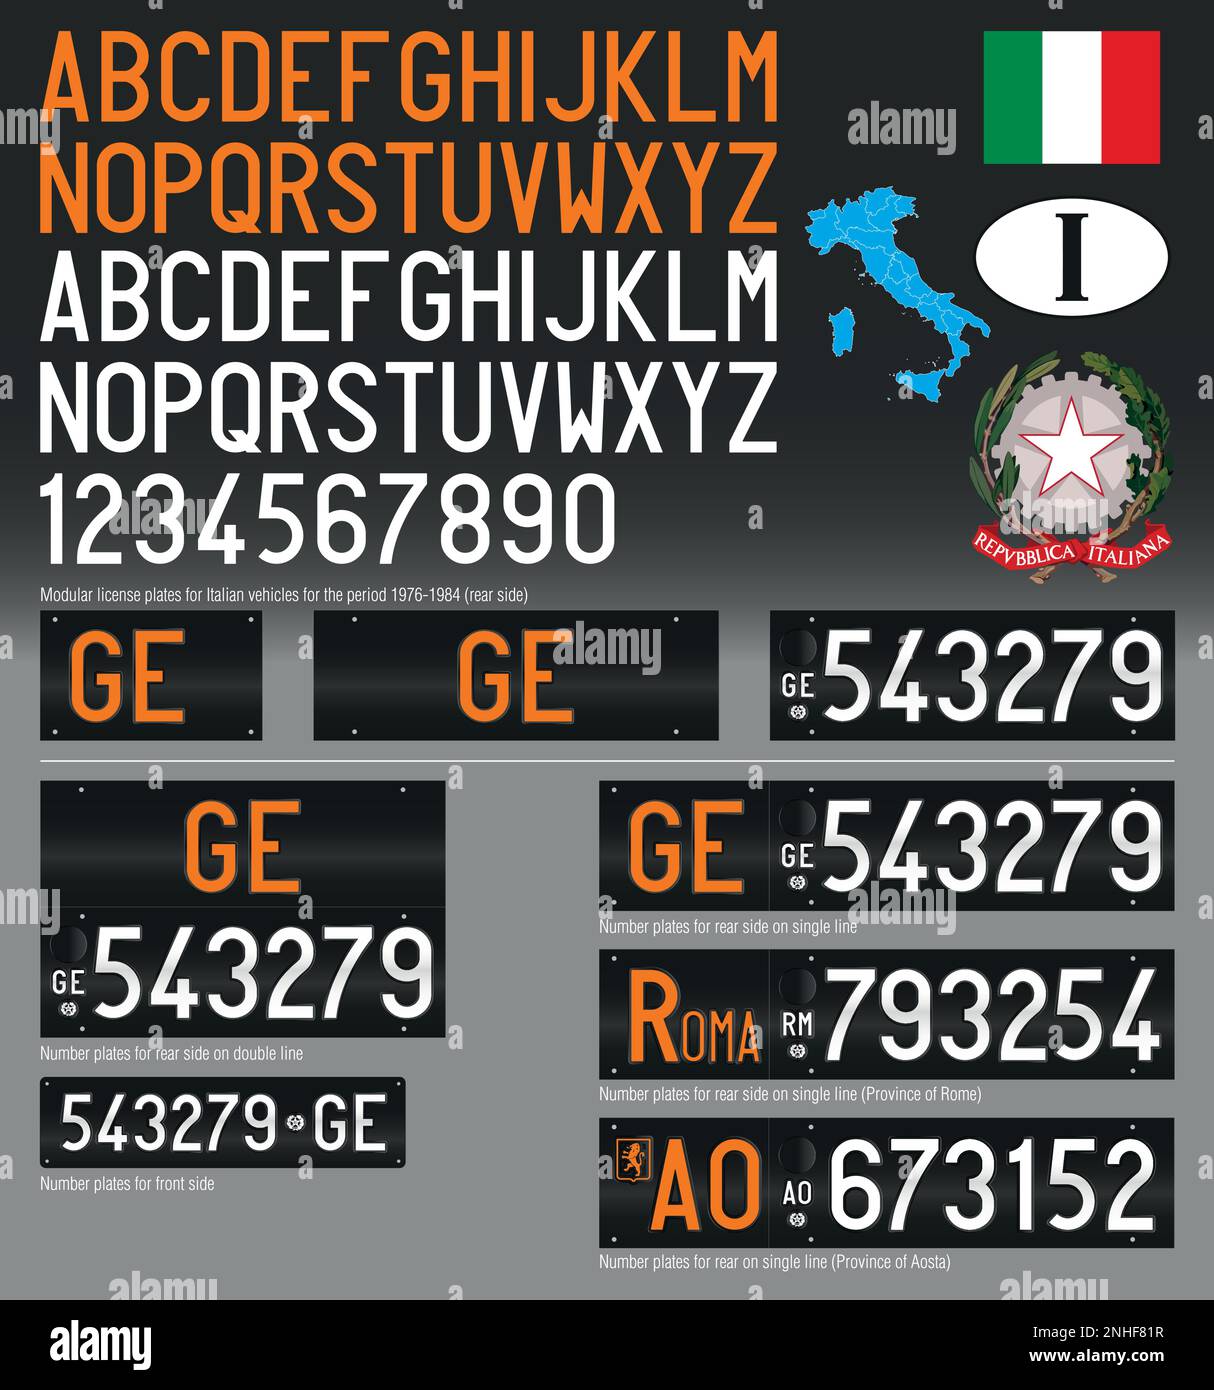 Italien, Autokennzeichen, Jahrgang 1976-1984, mit Symbolen, Zahlen und Buchstaben, Vektordarstellung Stock Vektor